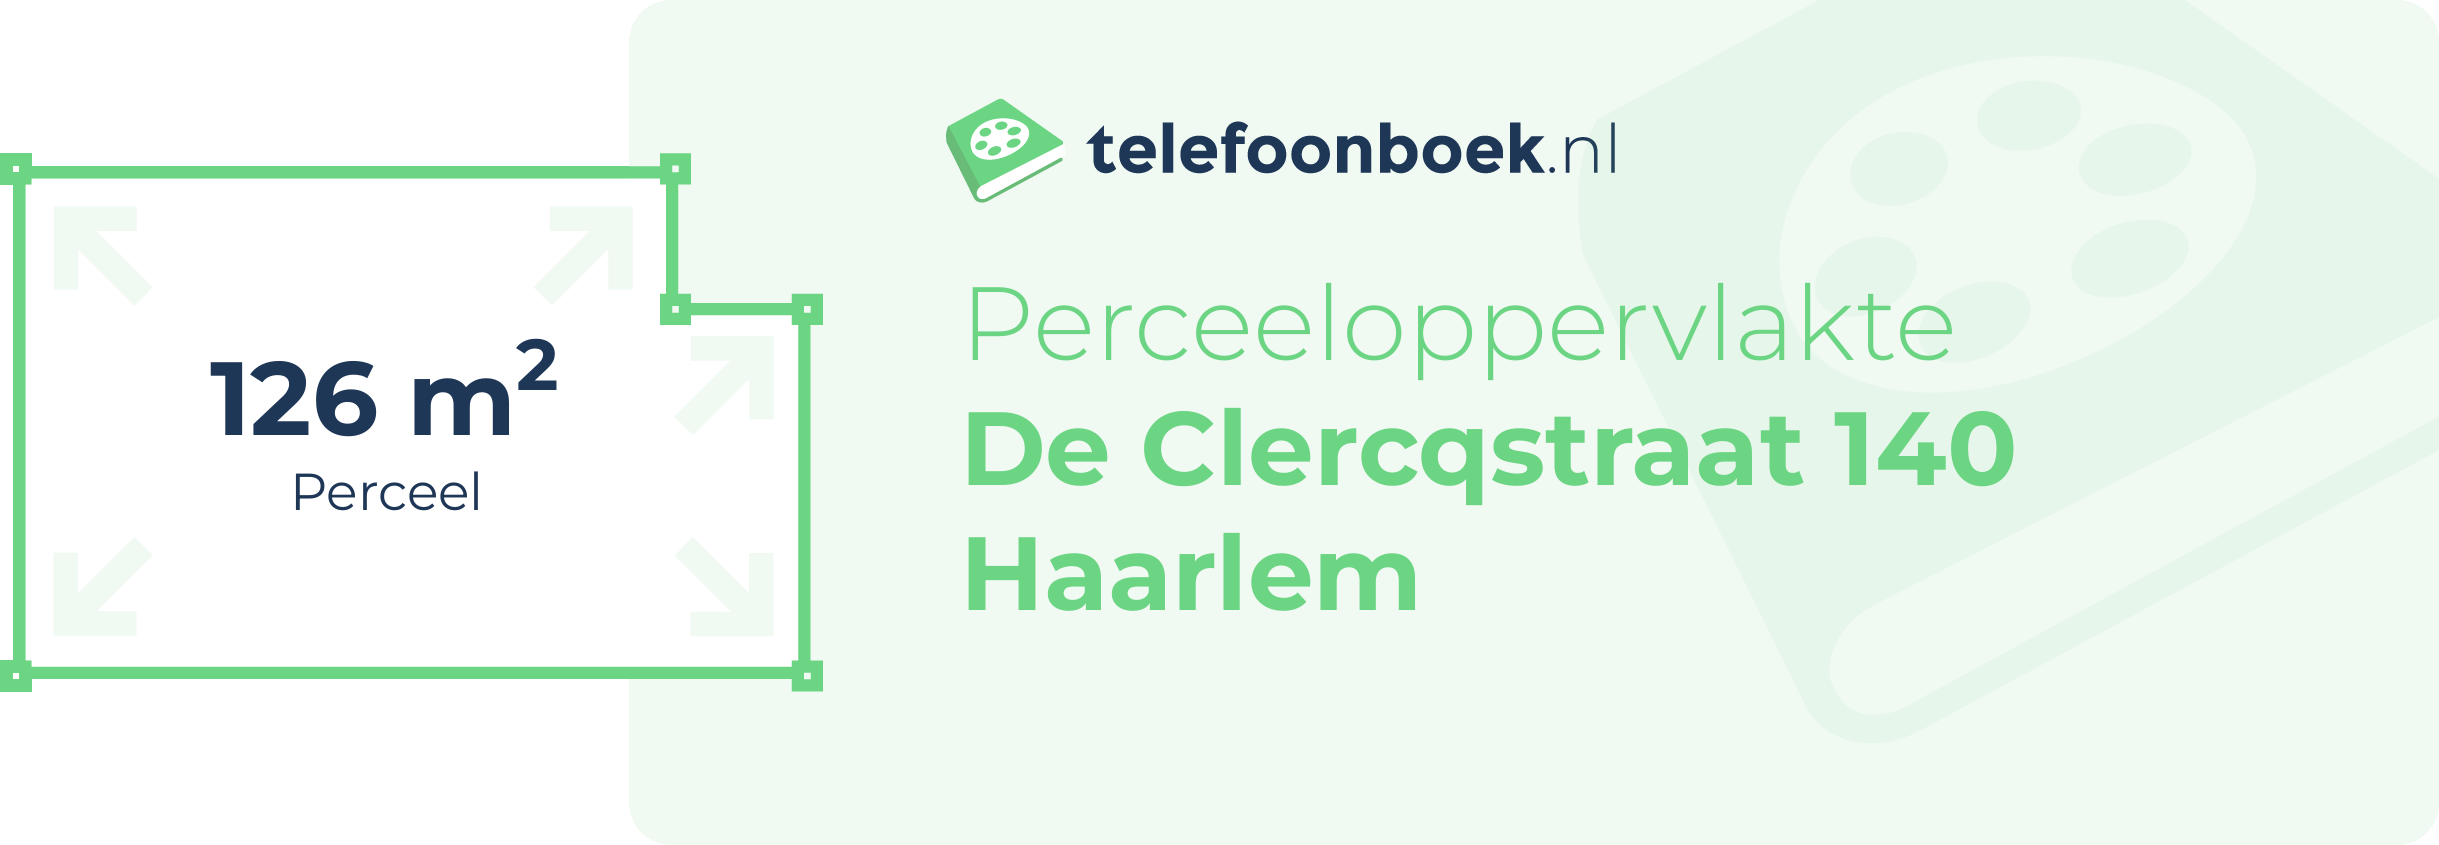 Perceeloppervlakte De Clercqstraat 140 Haarlem